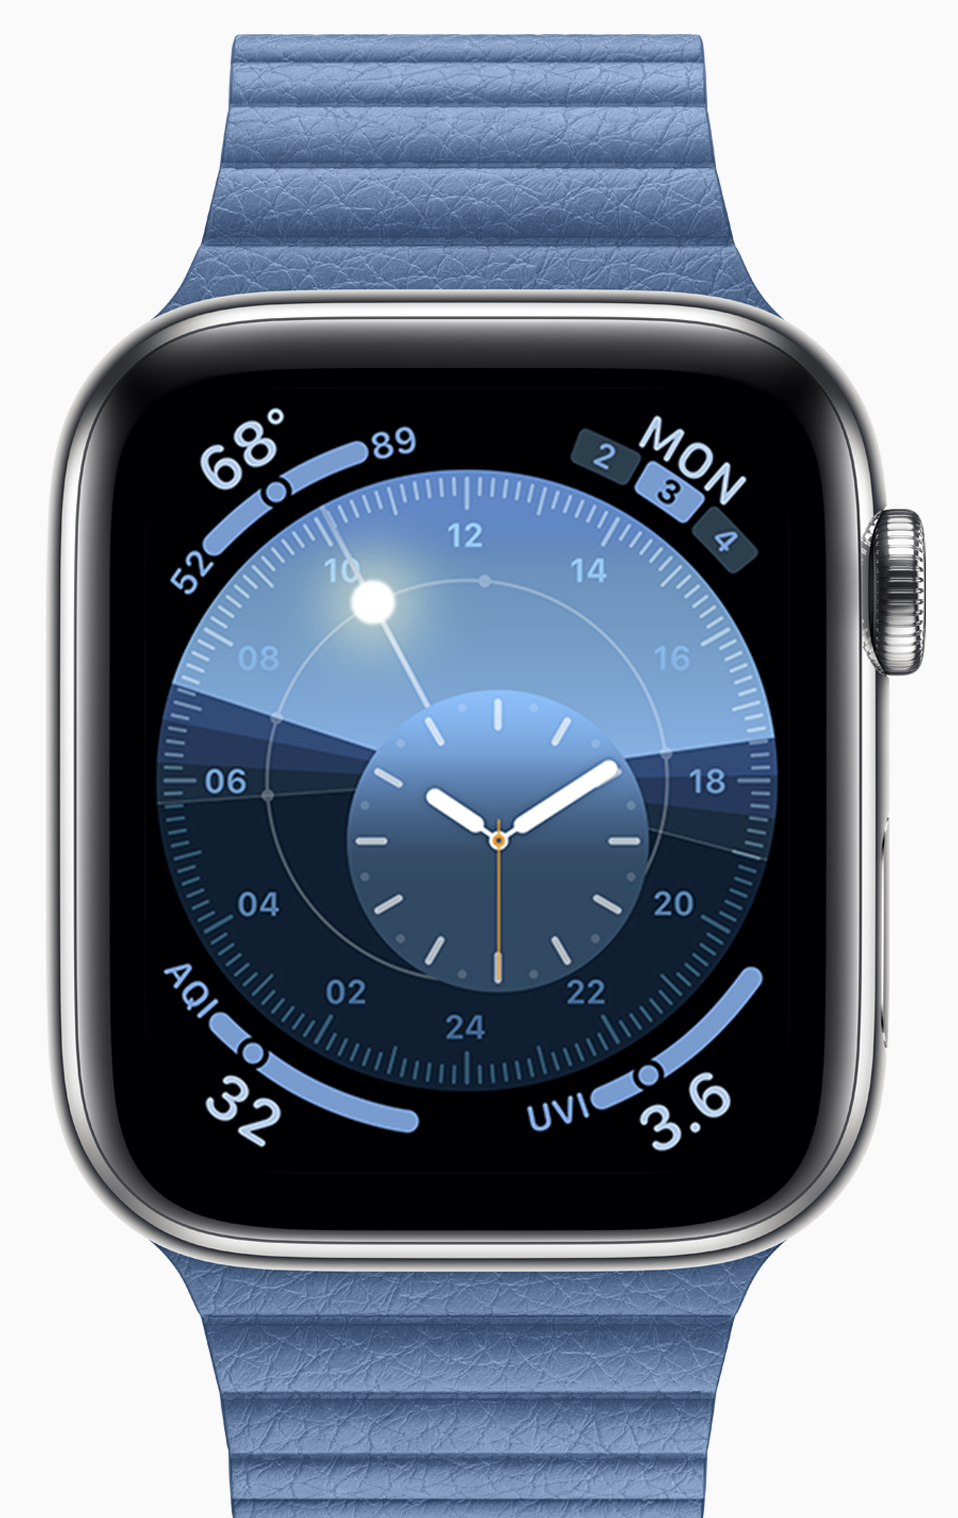 Apple posts fifth developer beta of watchOS 6.2